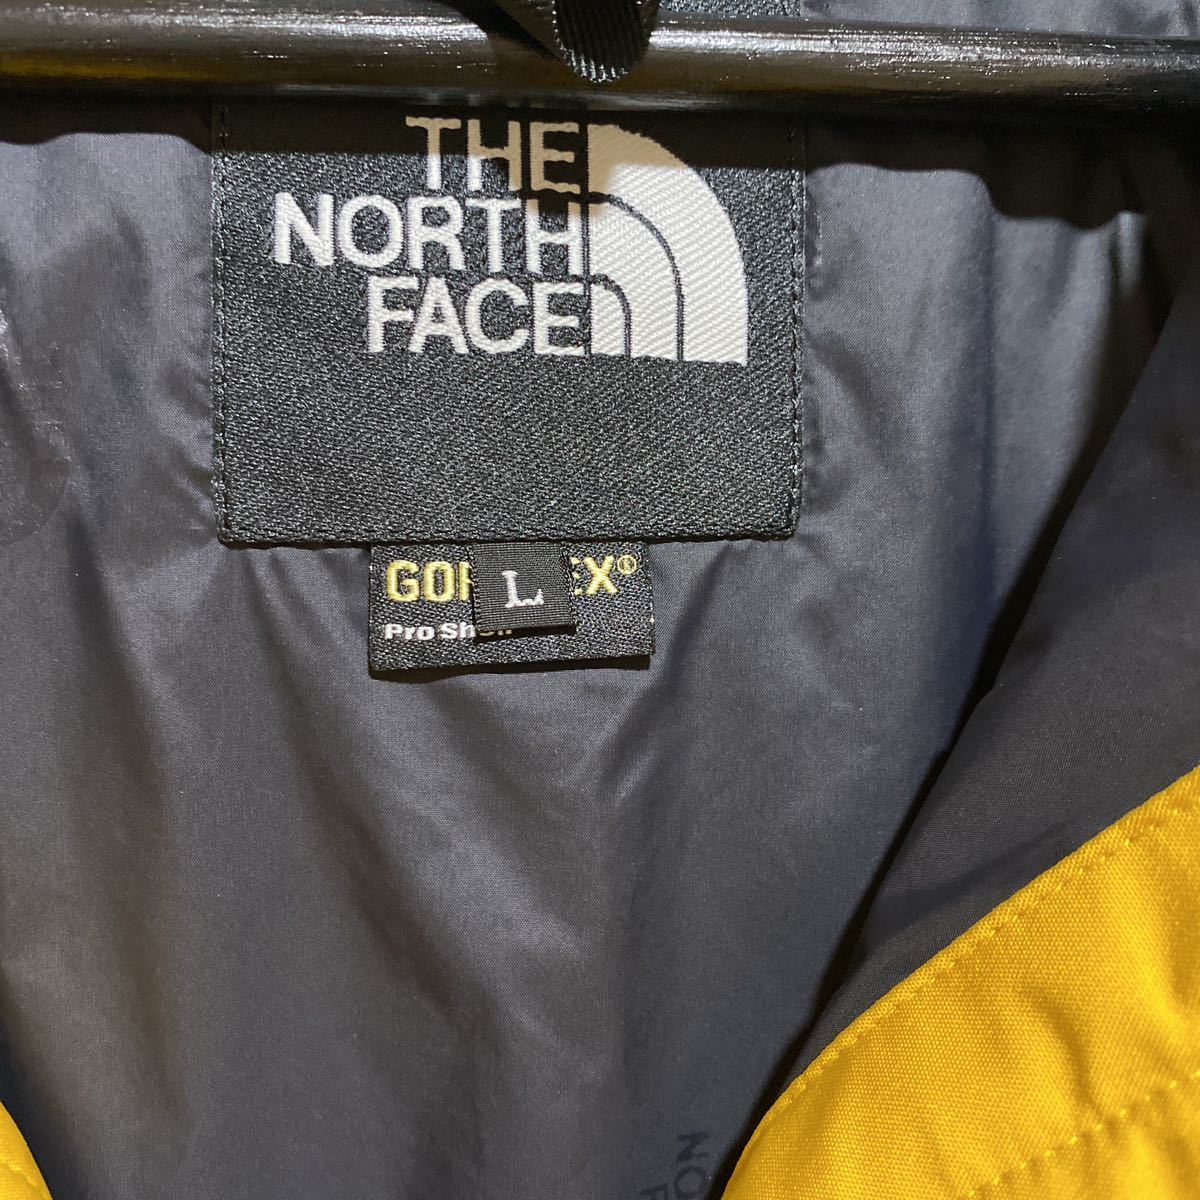 THE NORTH FACE ノースフェイス GORE-TEX マウンテンジャケット マウンテンパーカー np15105 プロシェル_画像5